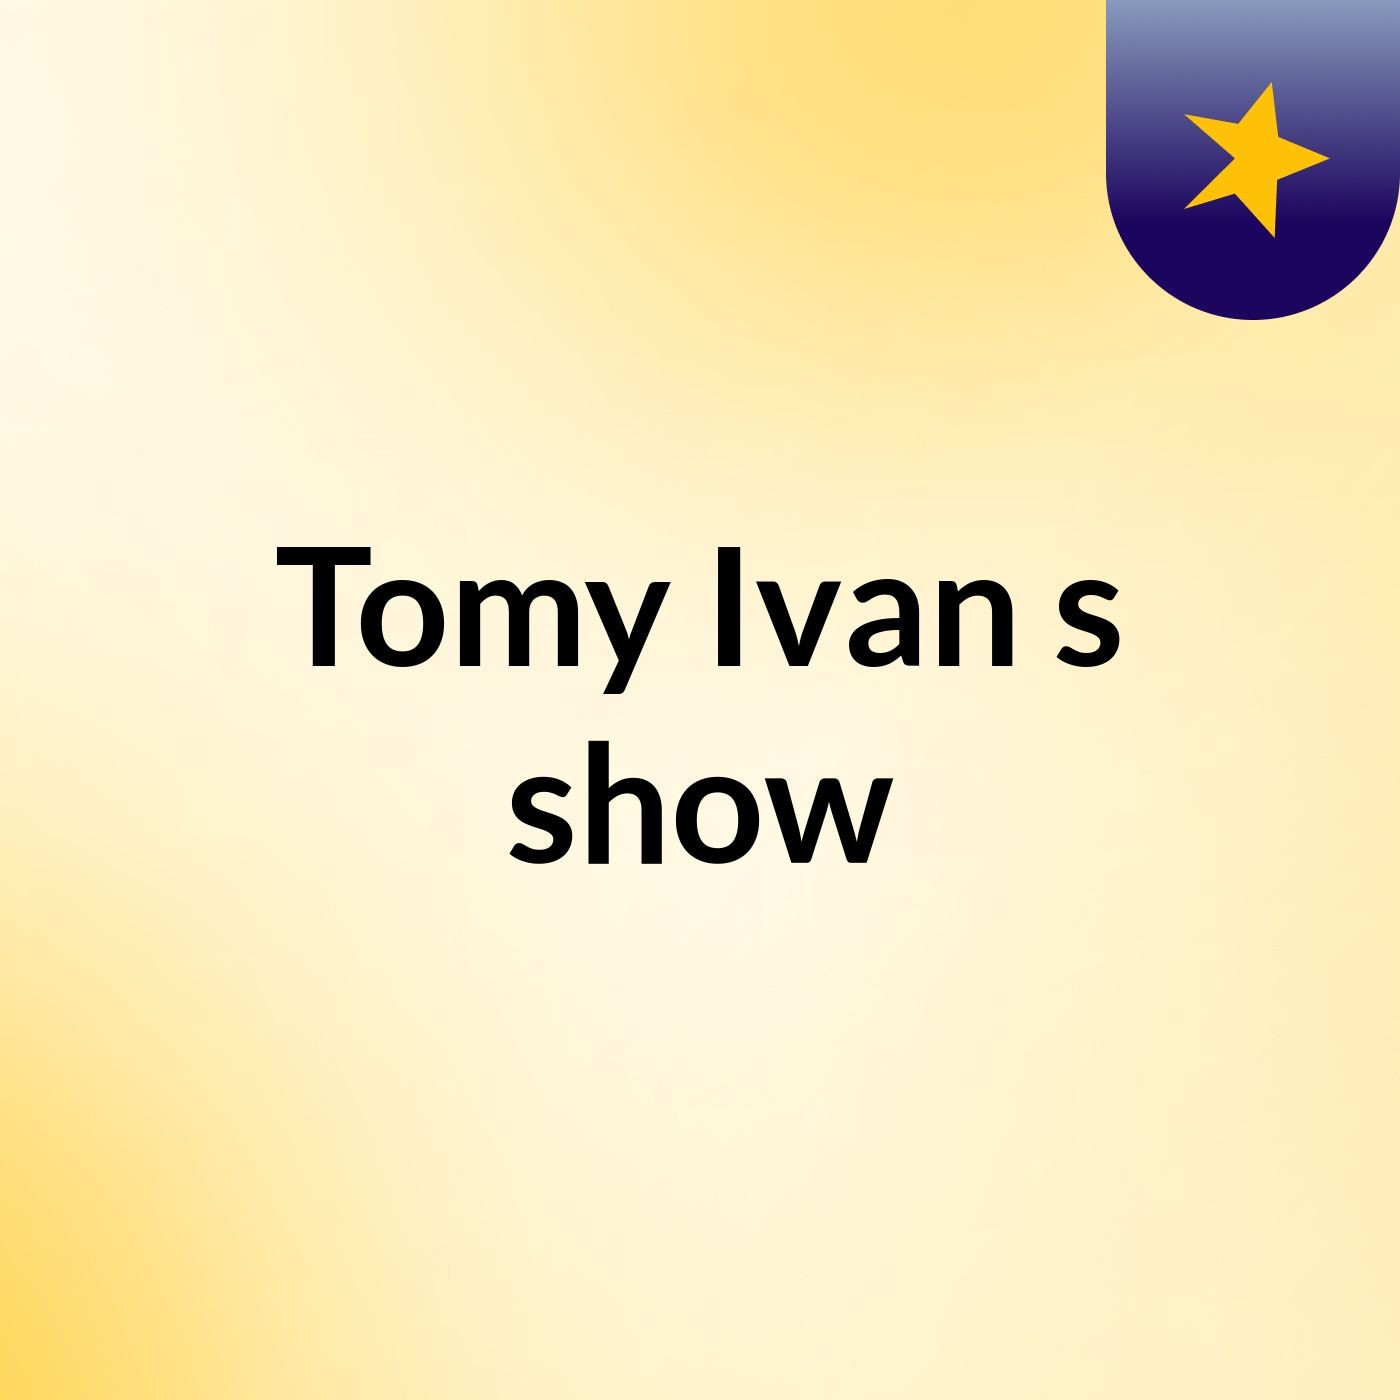 Tomy Ivan's show